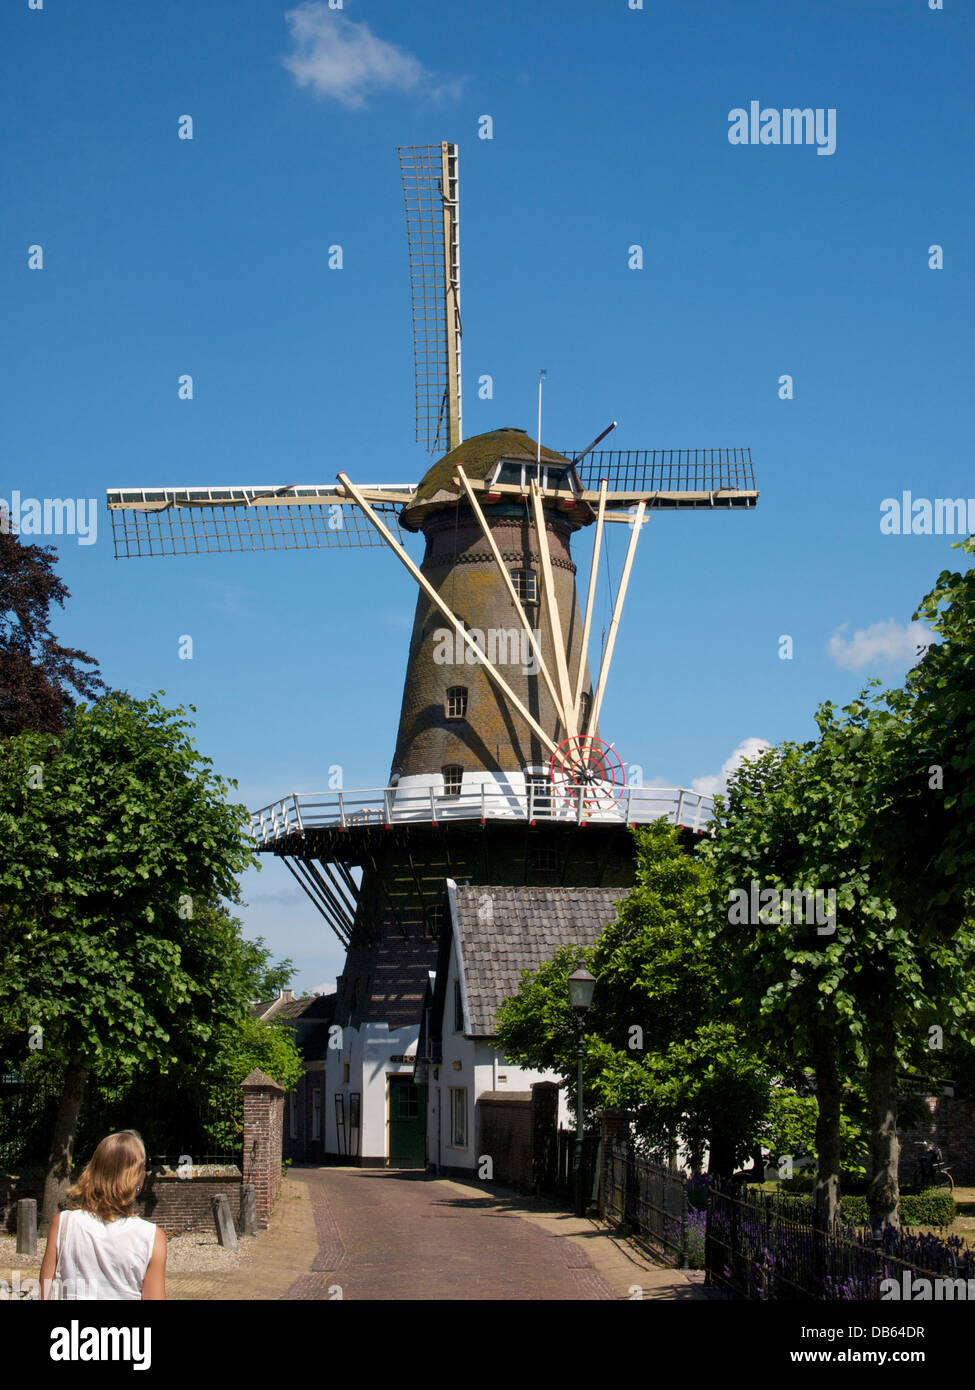 Windmühle de Hoop in Loenen Aan de Vecht, Utrecht, Niederlande. Aus dem Jahr 1903, nachdem sein Vorgänger durch einen Brand zerstört wurde Stockfoto